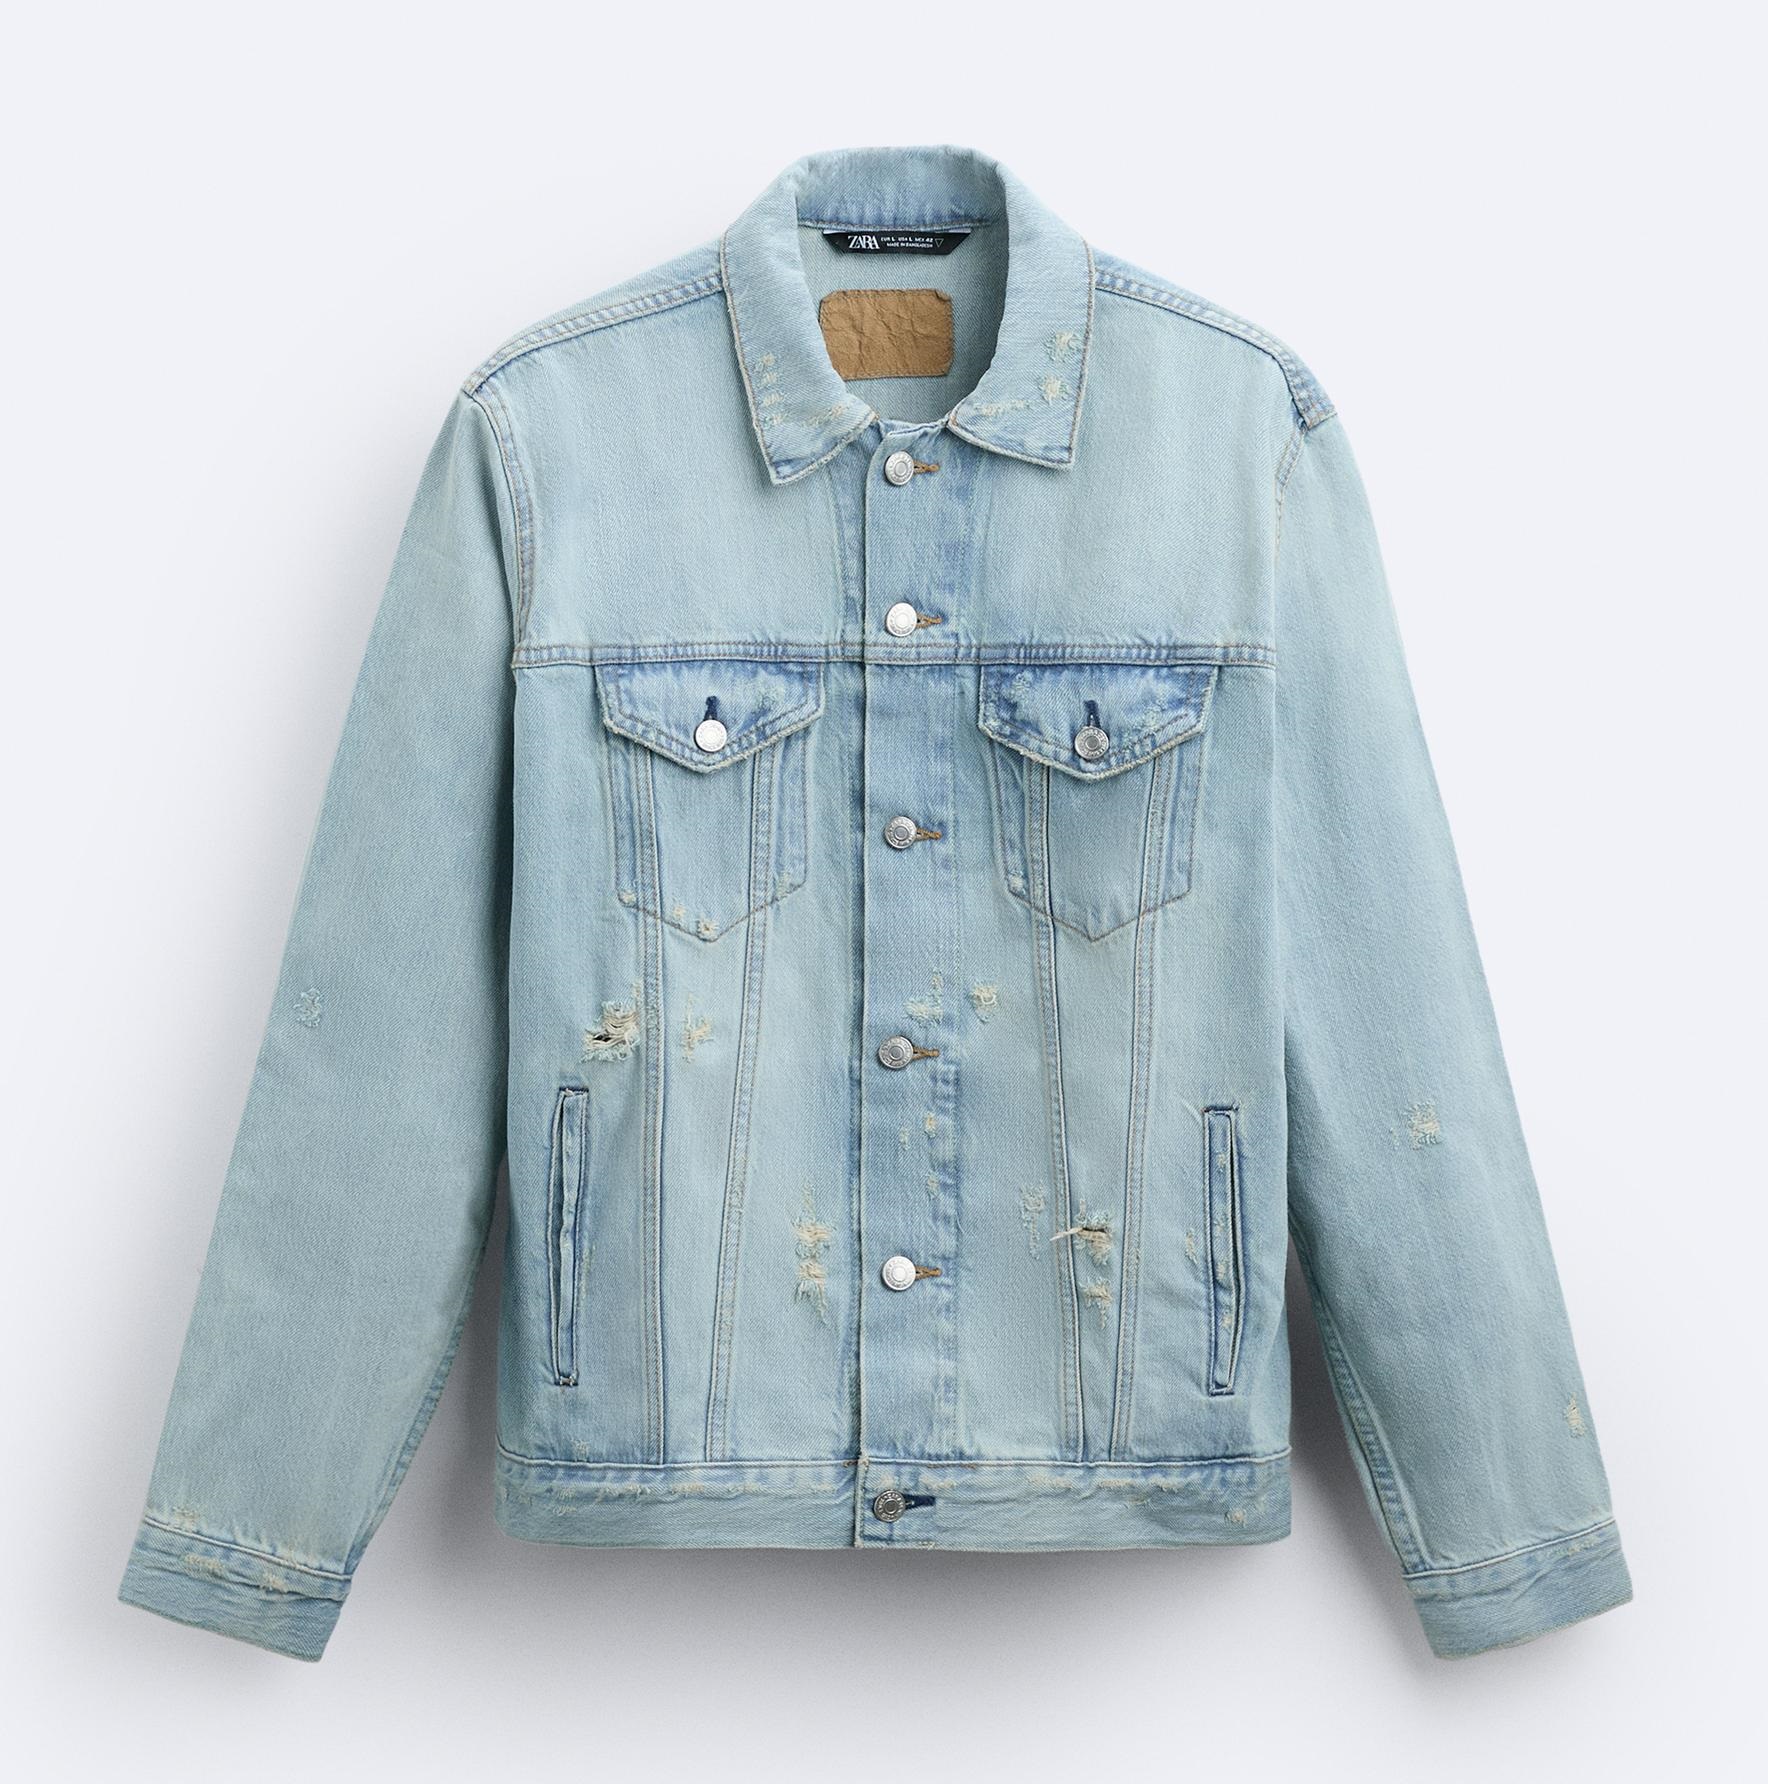 Куртка Zara Ripped Denim, голубой джинсовая куртка мужская рваная ковбойская джинсовая куртка модный тренд весна осень